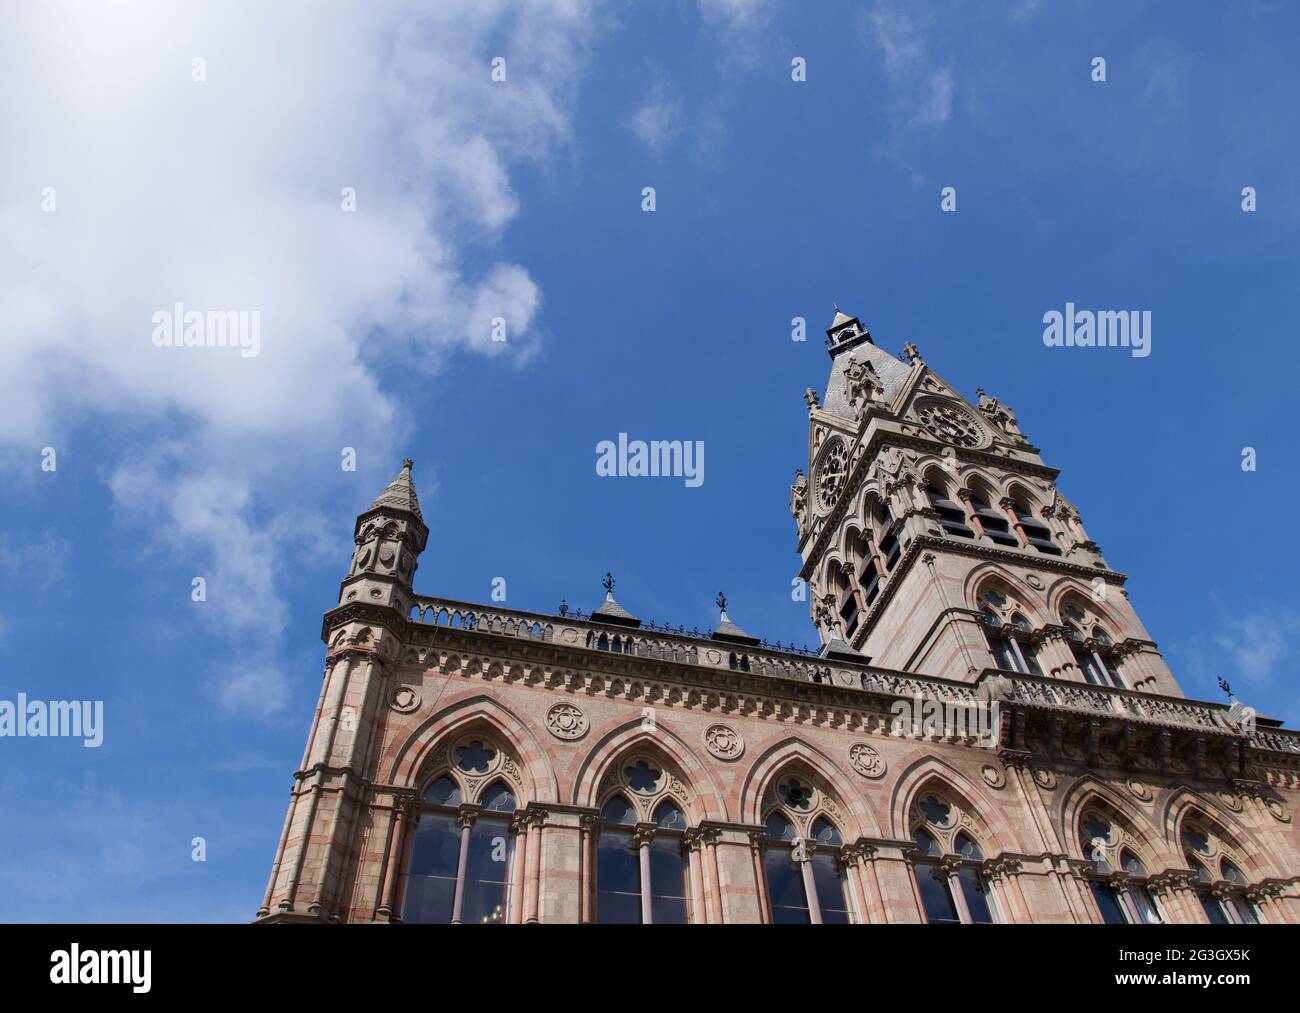 10 June 2021 - Chester, UK: Full frame image of city centre church Stock Photo